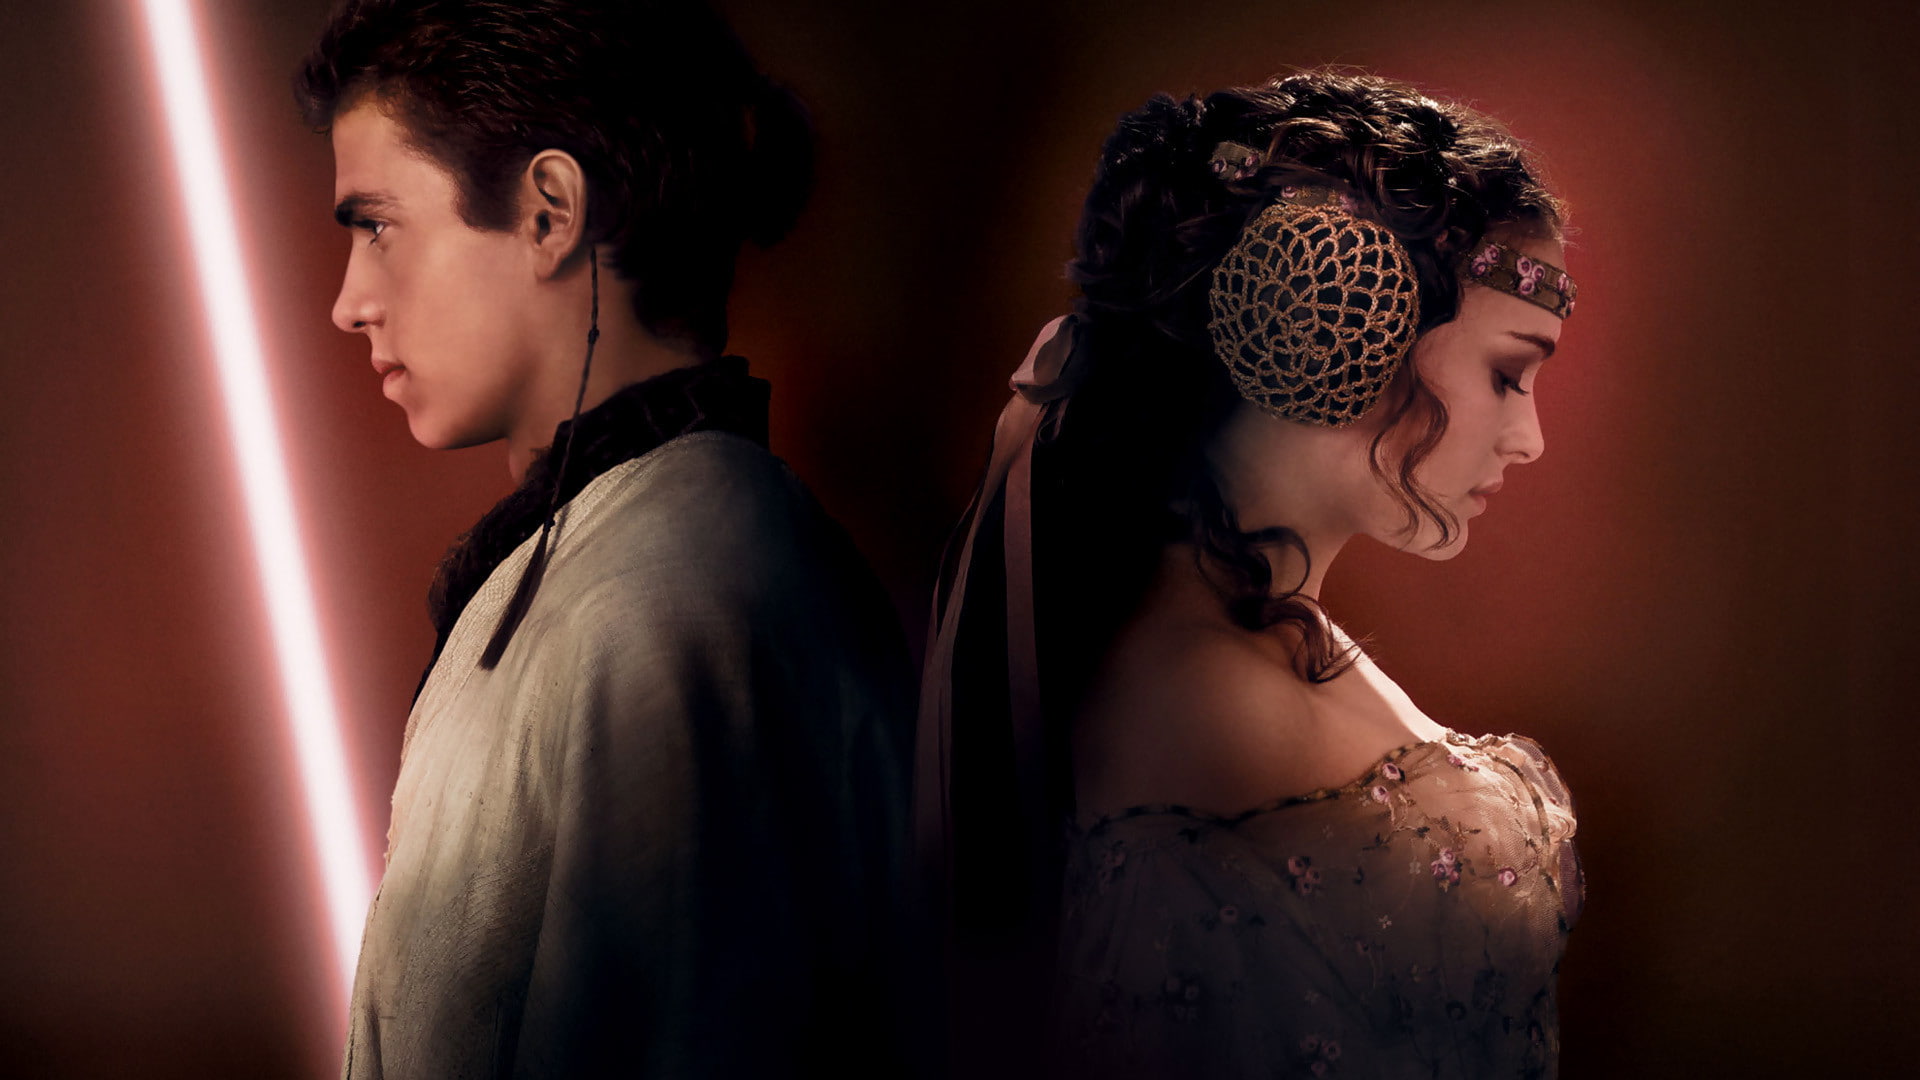 pair, star wars, Natalie Portman, Anakin Skywalker, Hayden Christensen